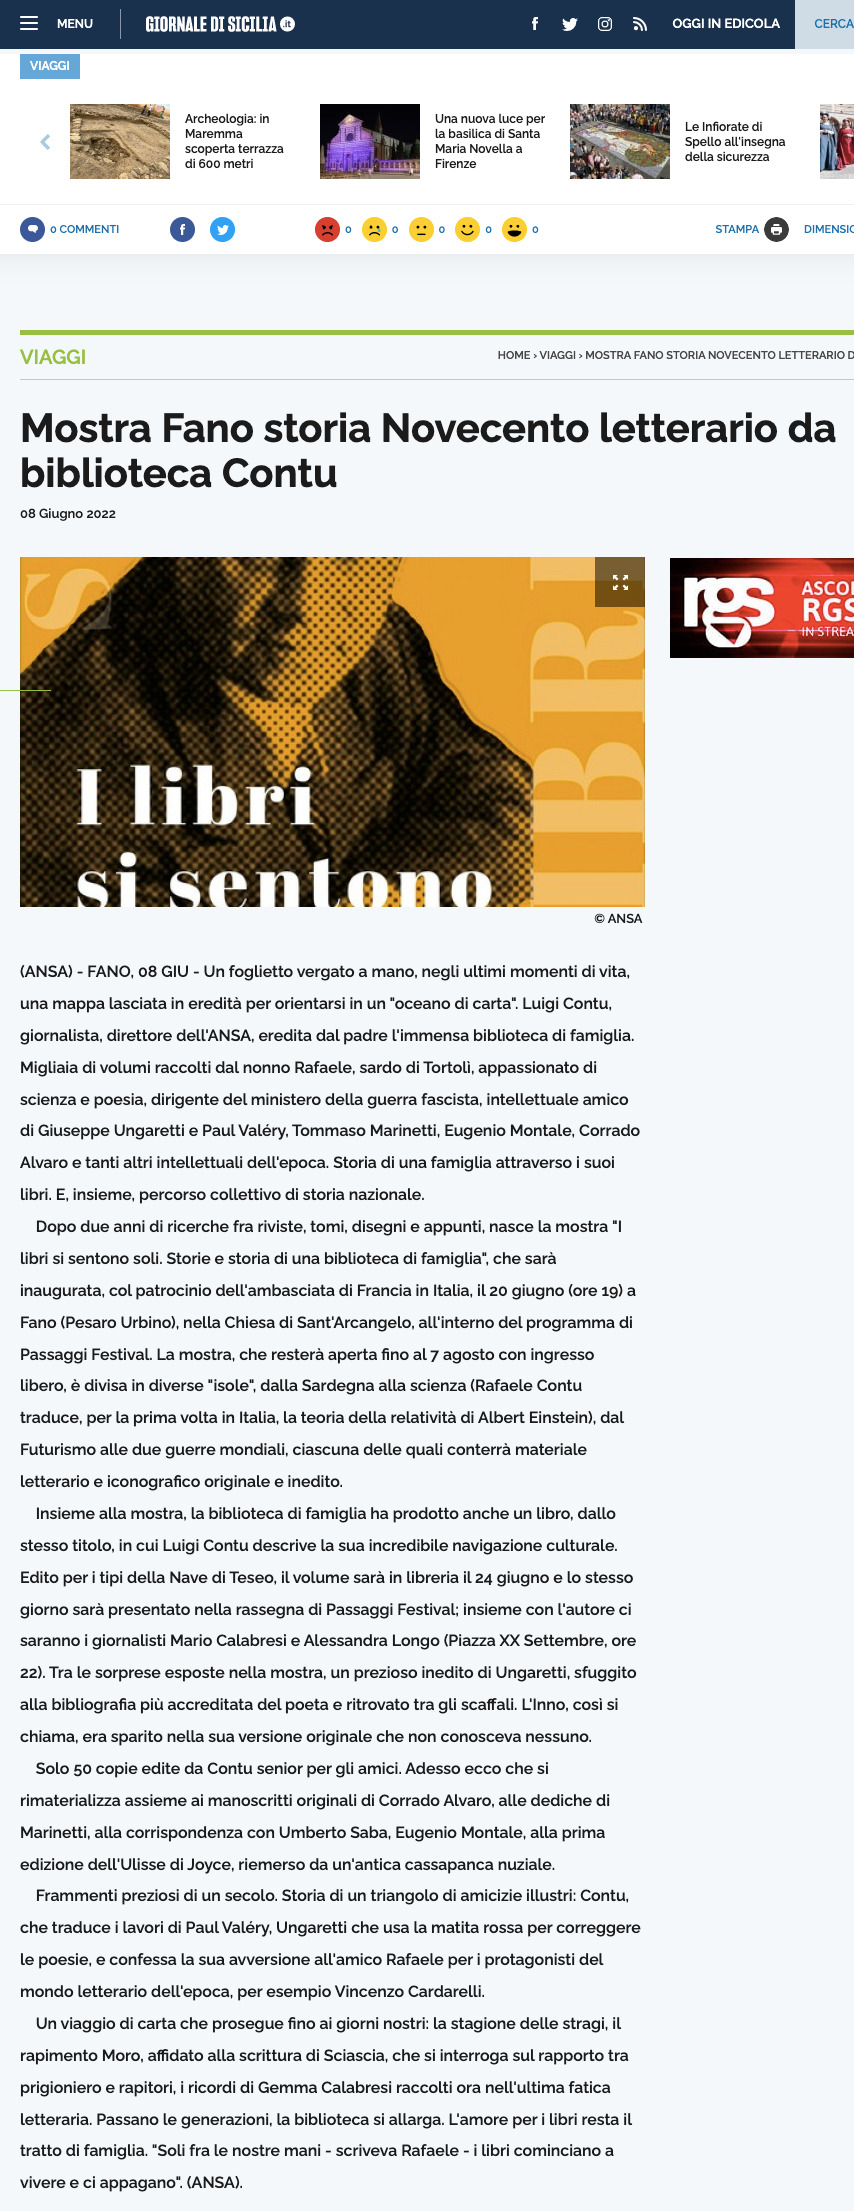 2022-06-08-giornale-di-sicilia-mostra-fano-storia-novecento-letterario-da-biblioteca-contu